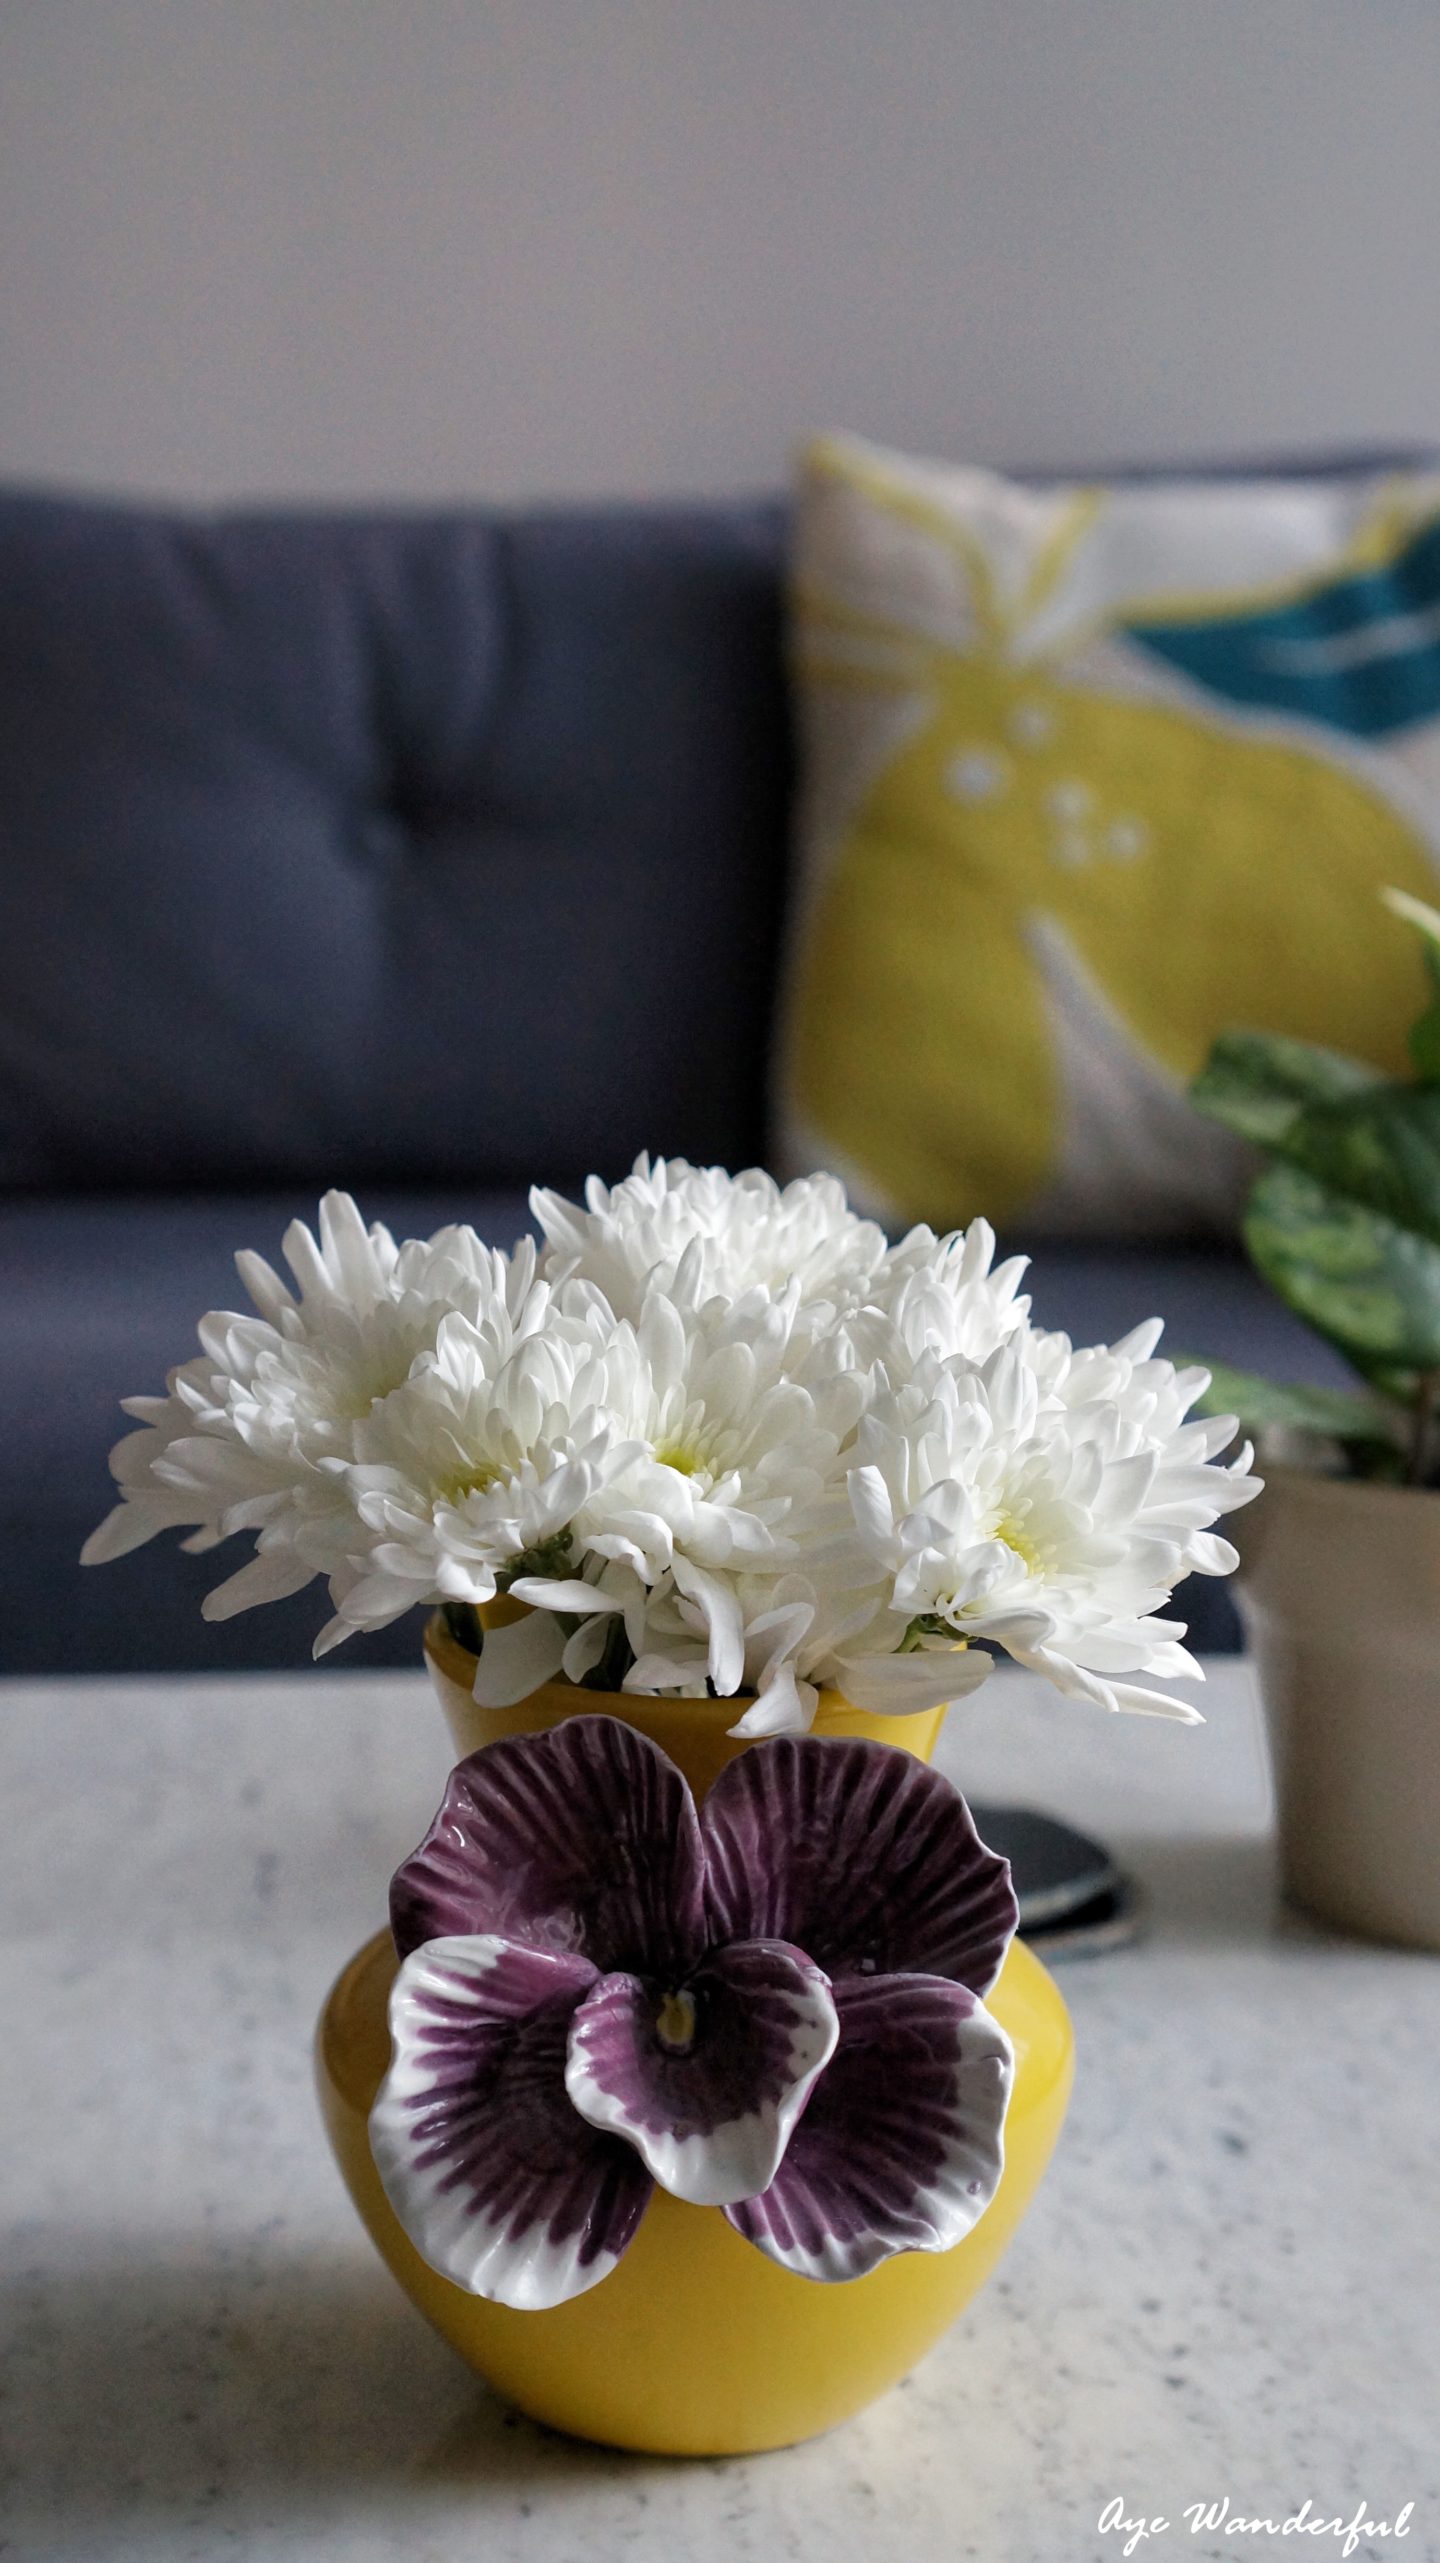 Using Ceramics in Home Decor | Vase